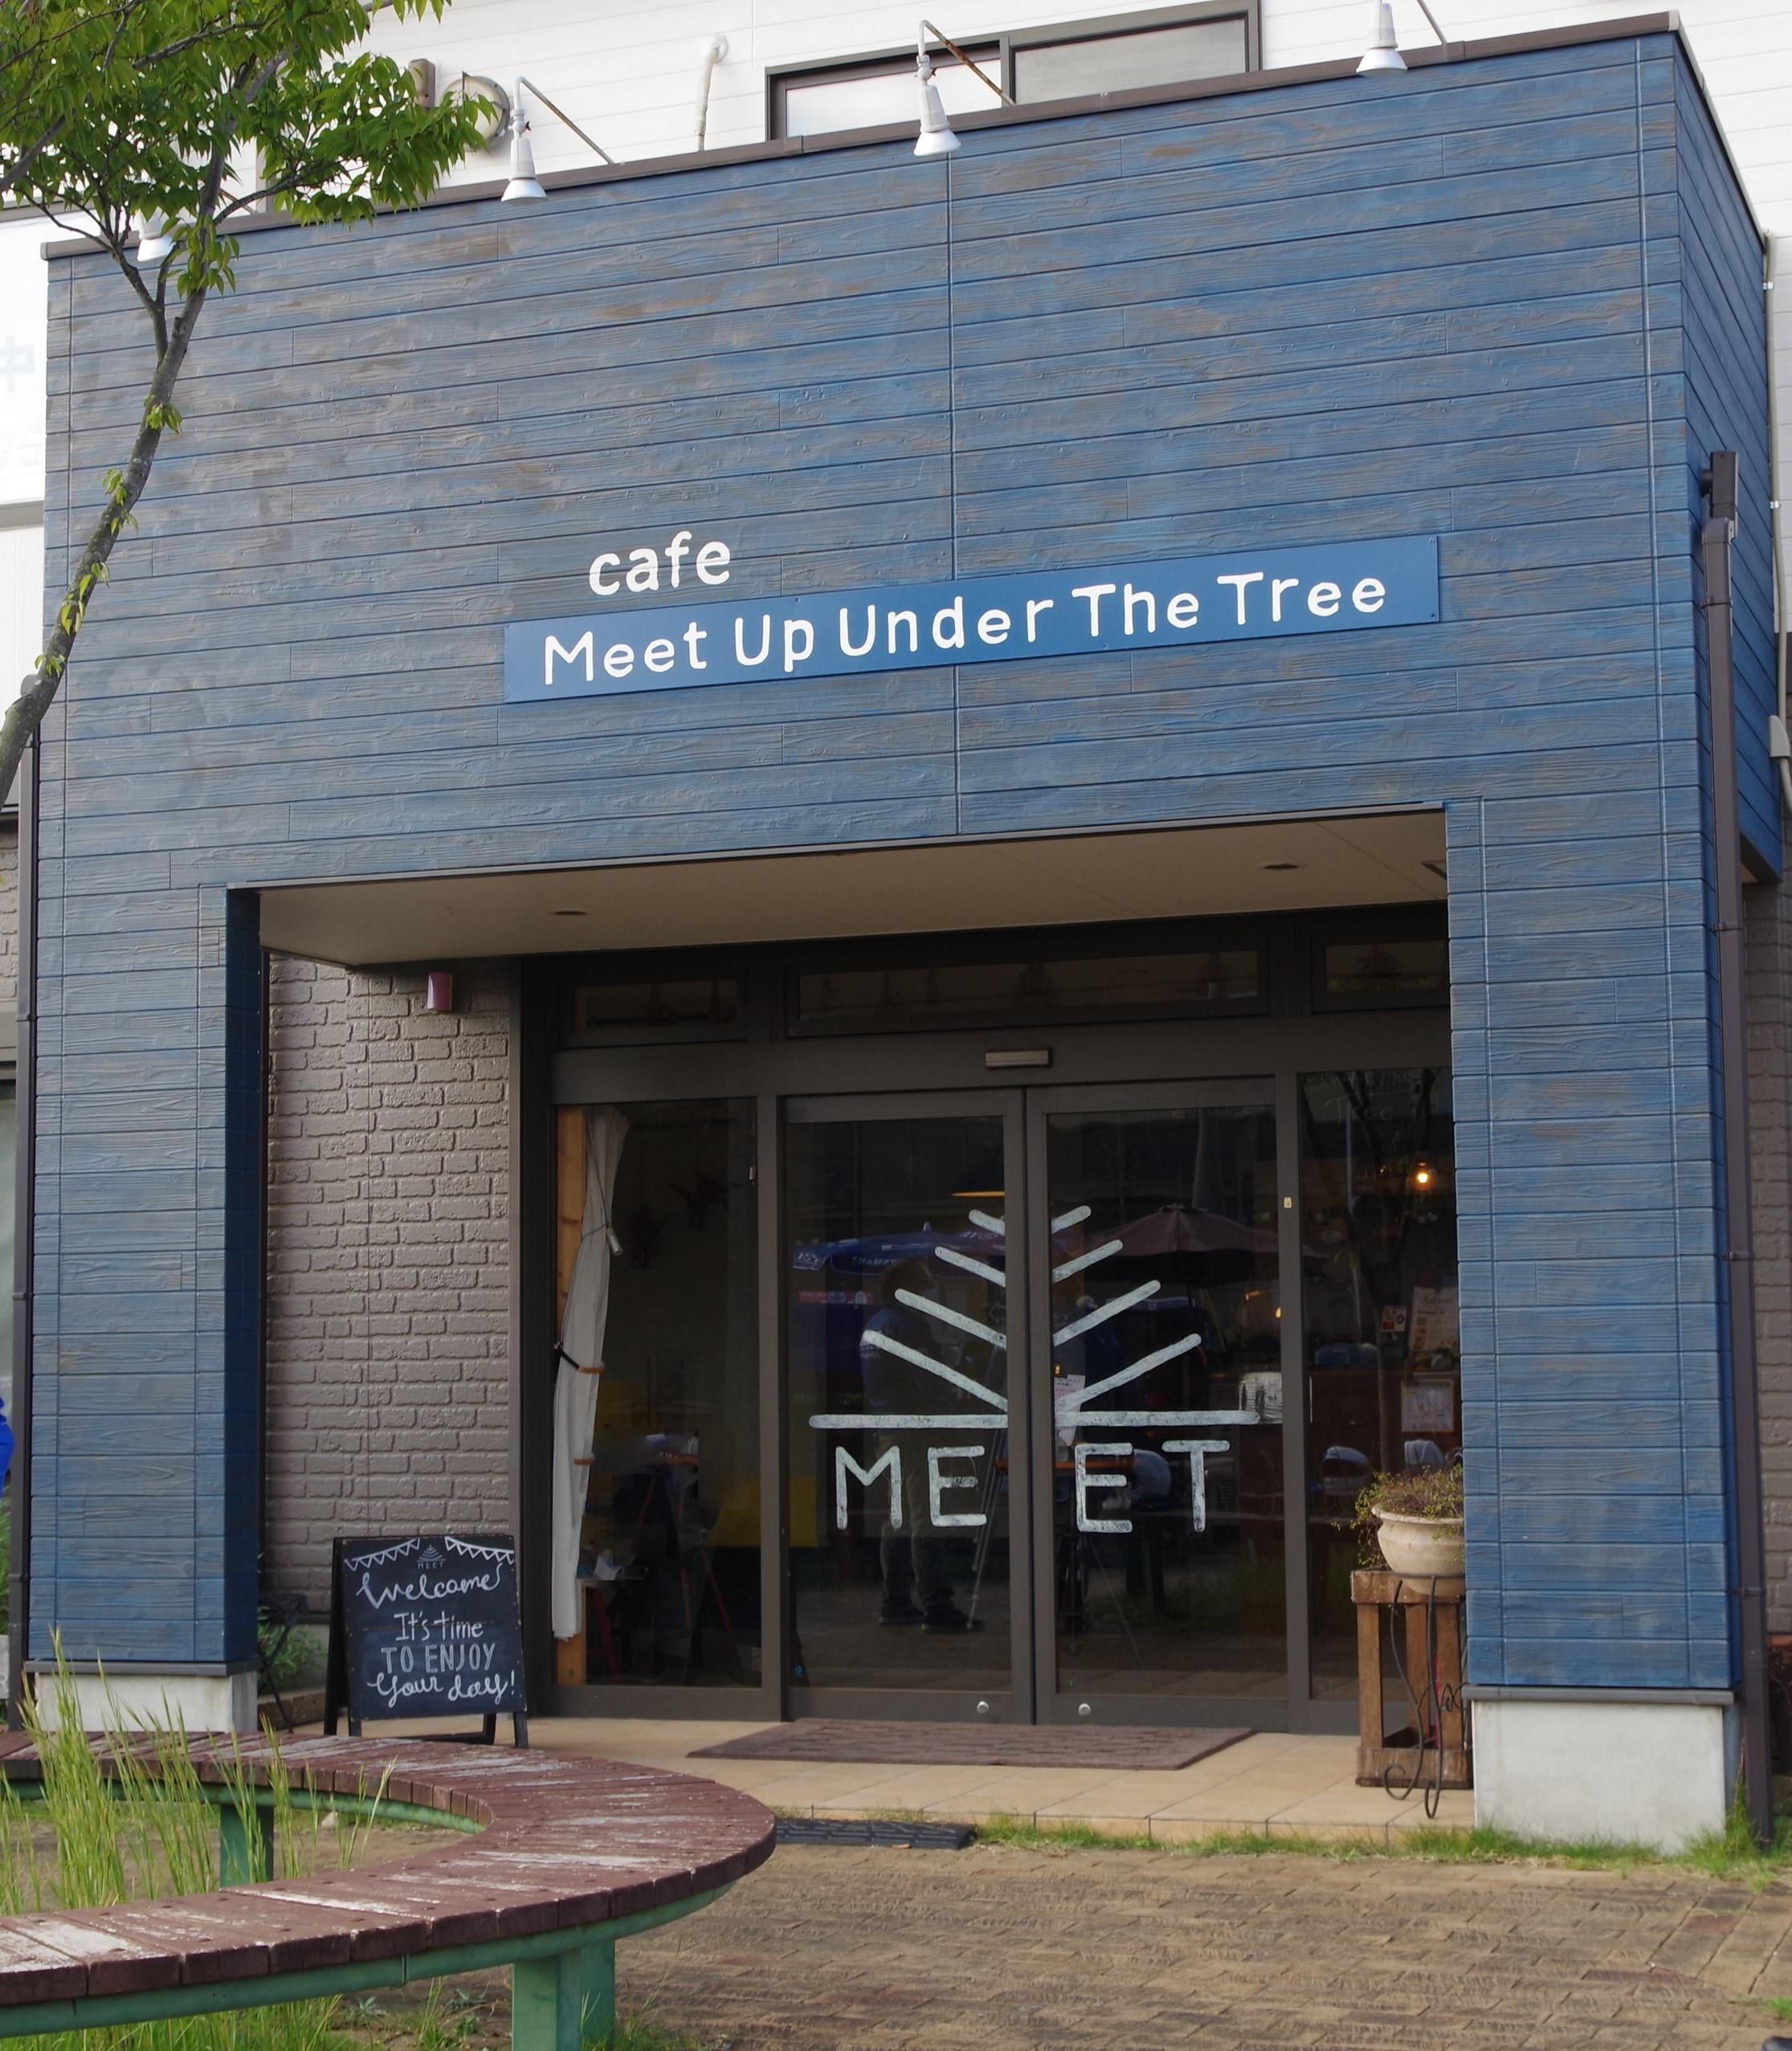 ツーリングの目的地のカフェMeet Up Under The Treeさんに到着しました！